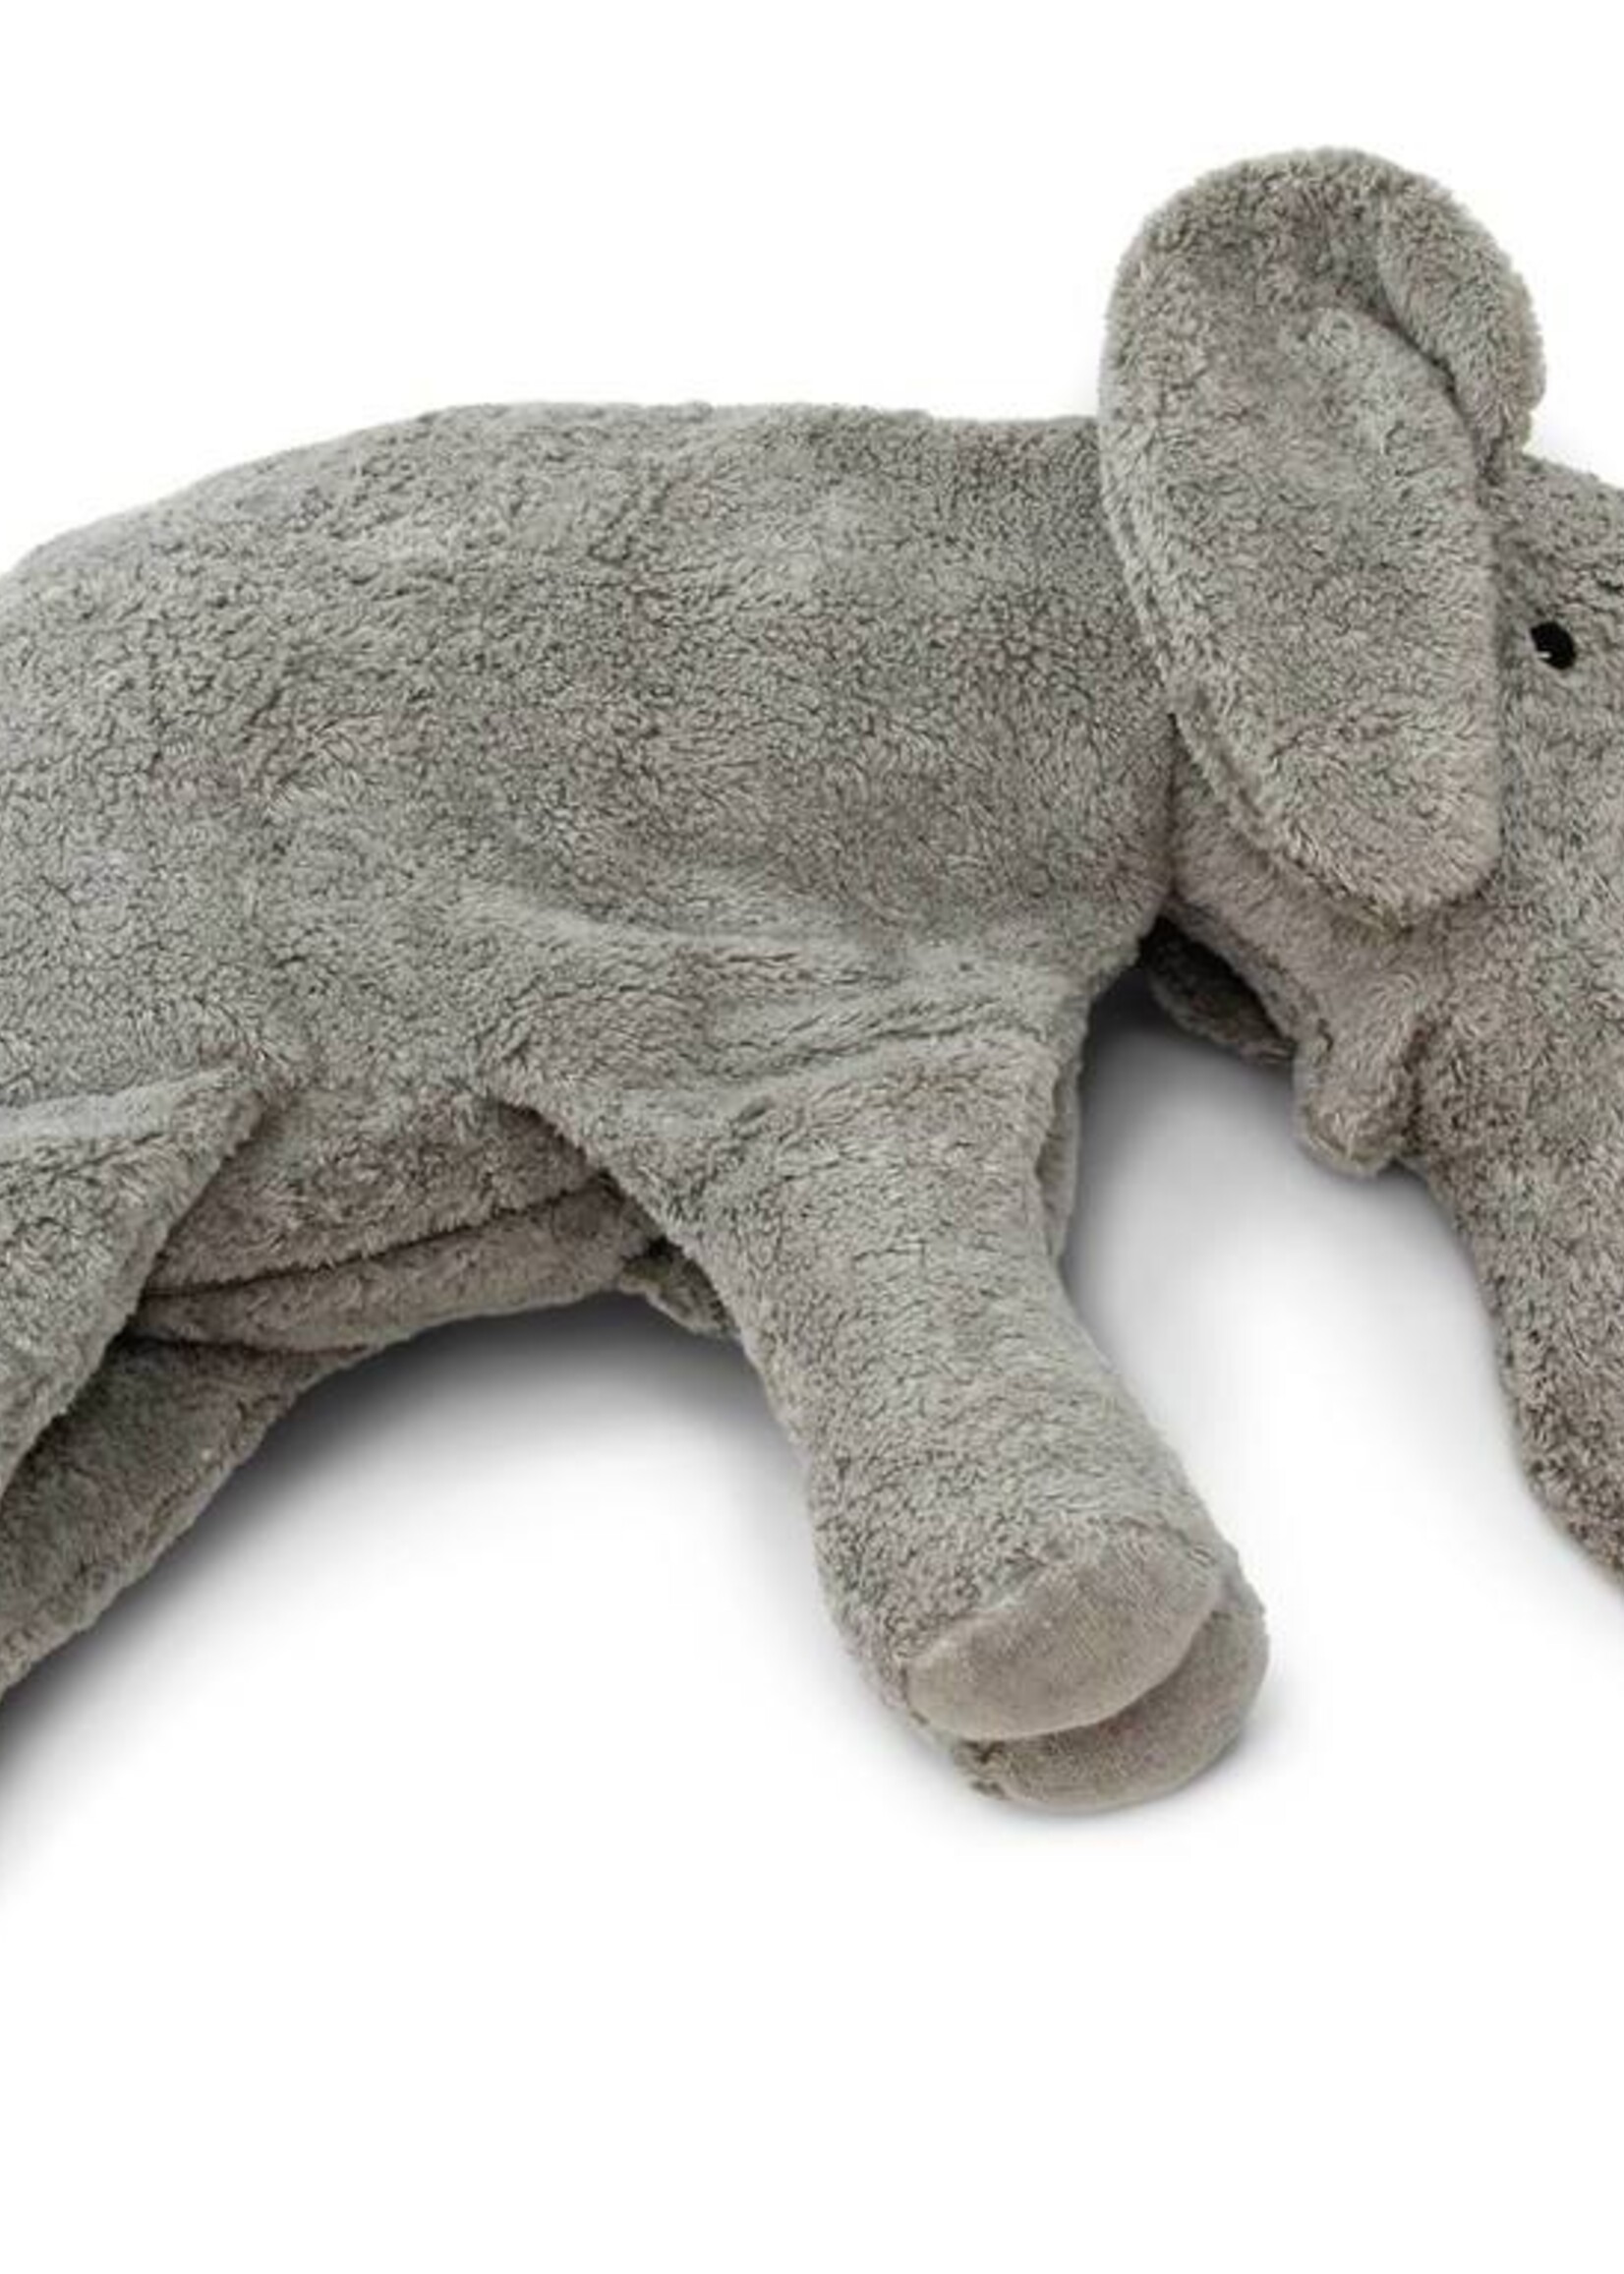 Senger naturwelt Cuddle animal Elephant Large - Senger Naturwelt